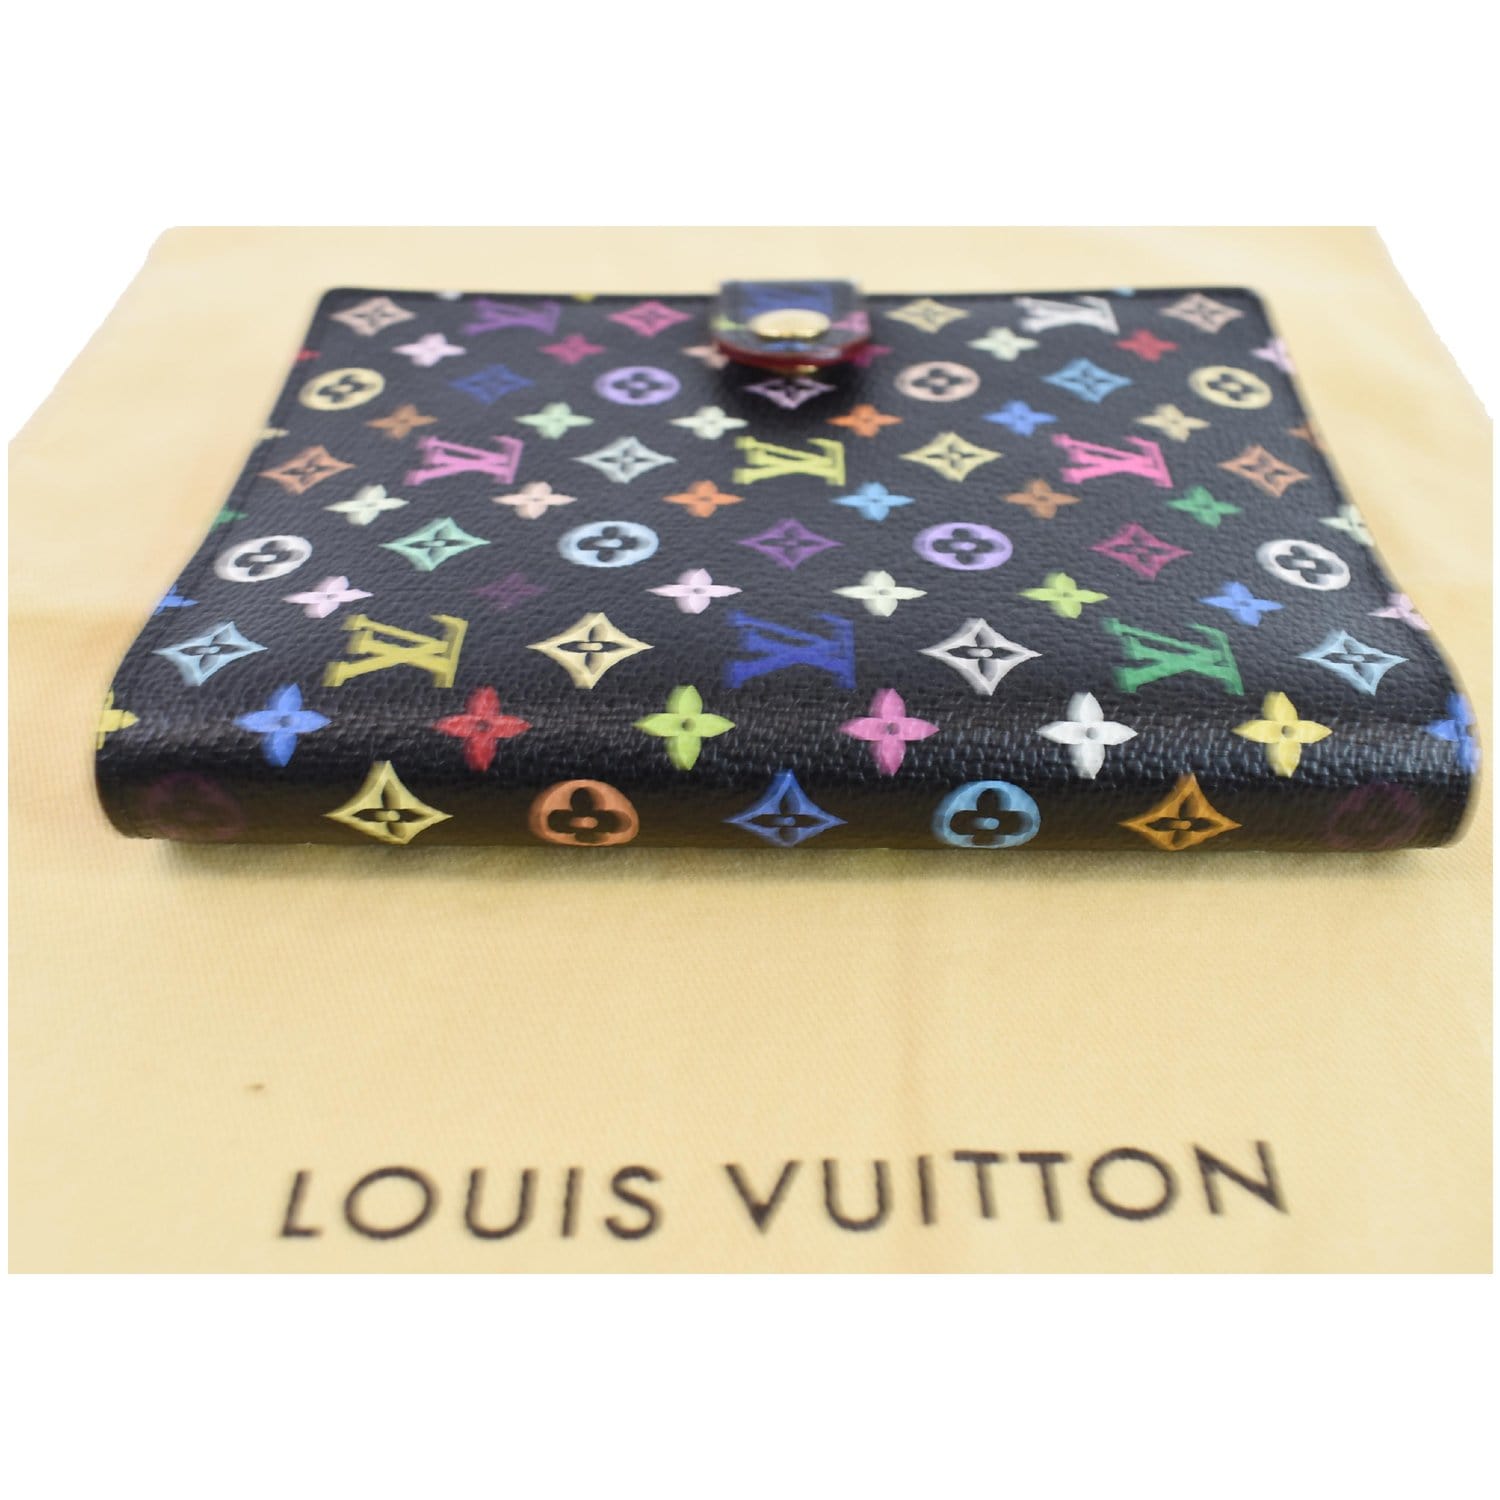 ♥ Planner Setup: Louis Vuitton PM Agenda Multicolor 